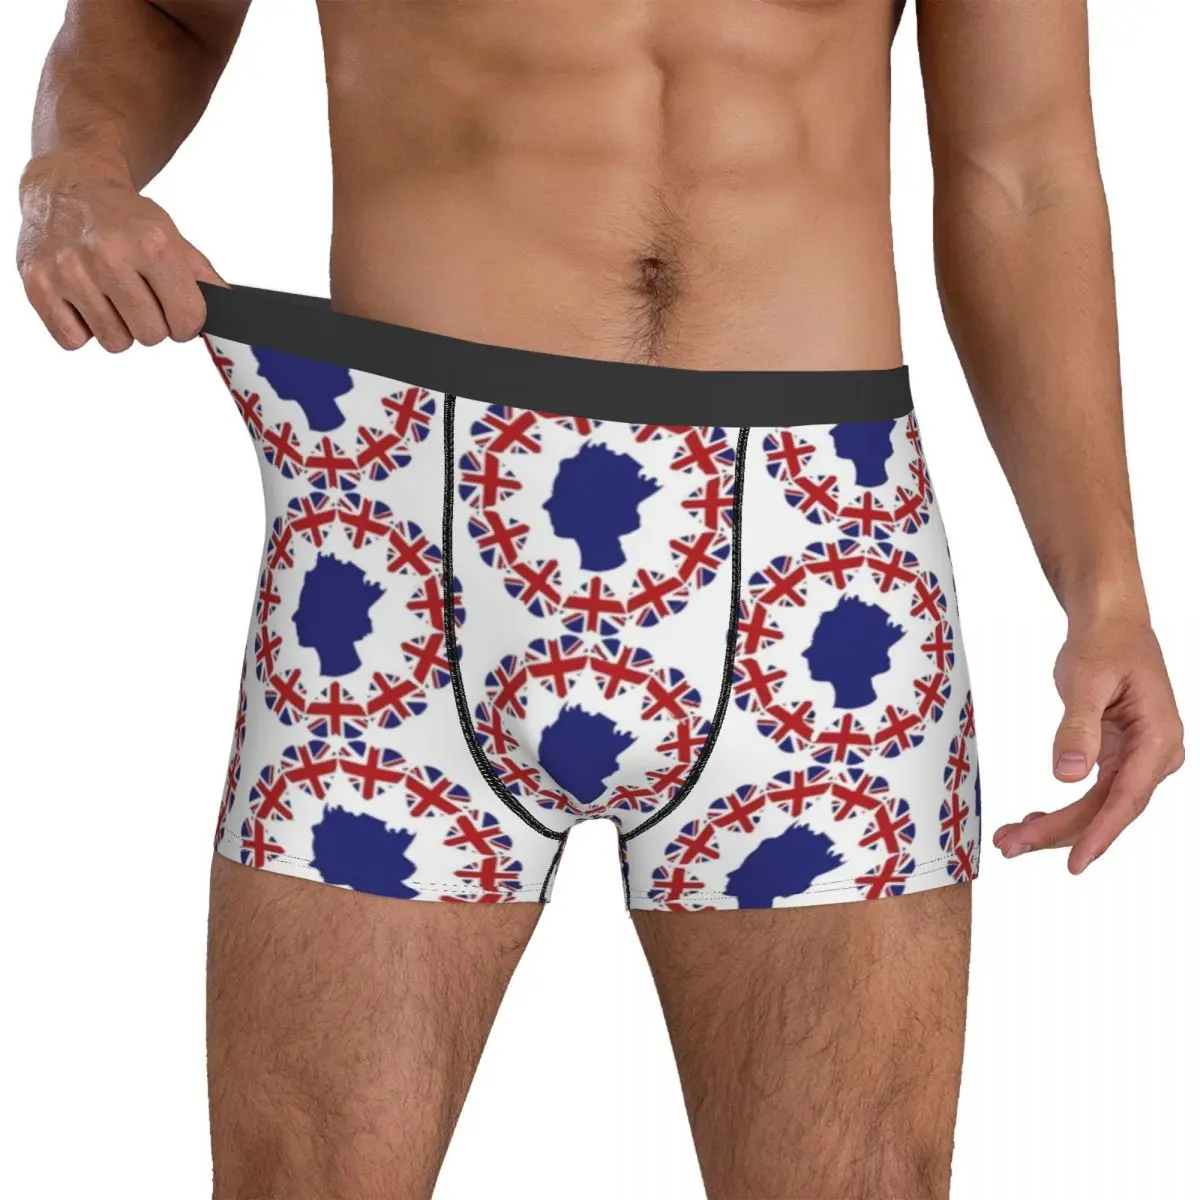 Platinum Jubilee Underwear Queen Elizabeth UK Flag Classic Underpants Print Shorts Briefs 3D Pouch Men's Plus Size Trunk